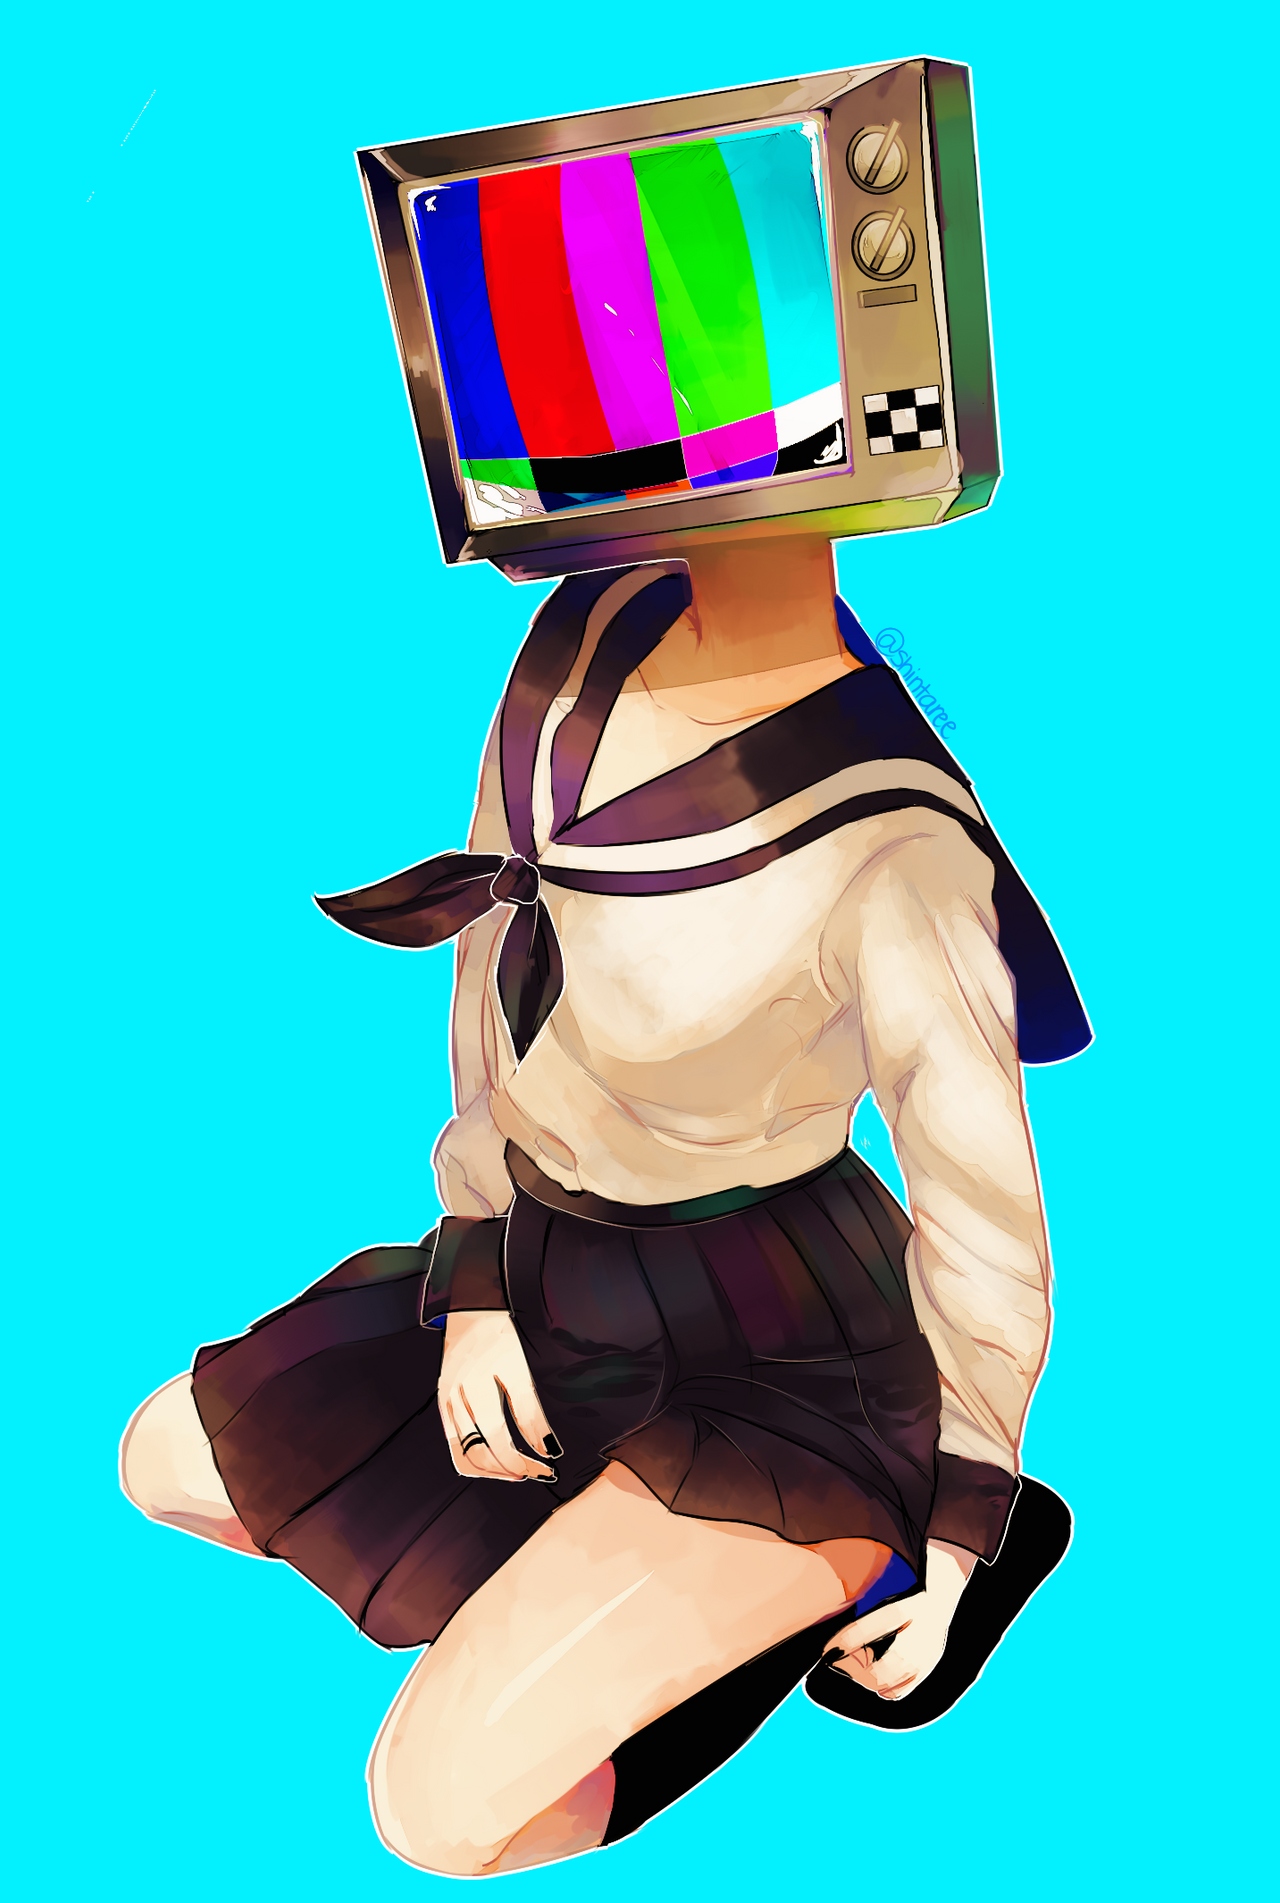 Телевизор вместо головы. Персонаж с телевизором на голове. Девочка с теликом на голове. Человек с головой телевизора.